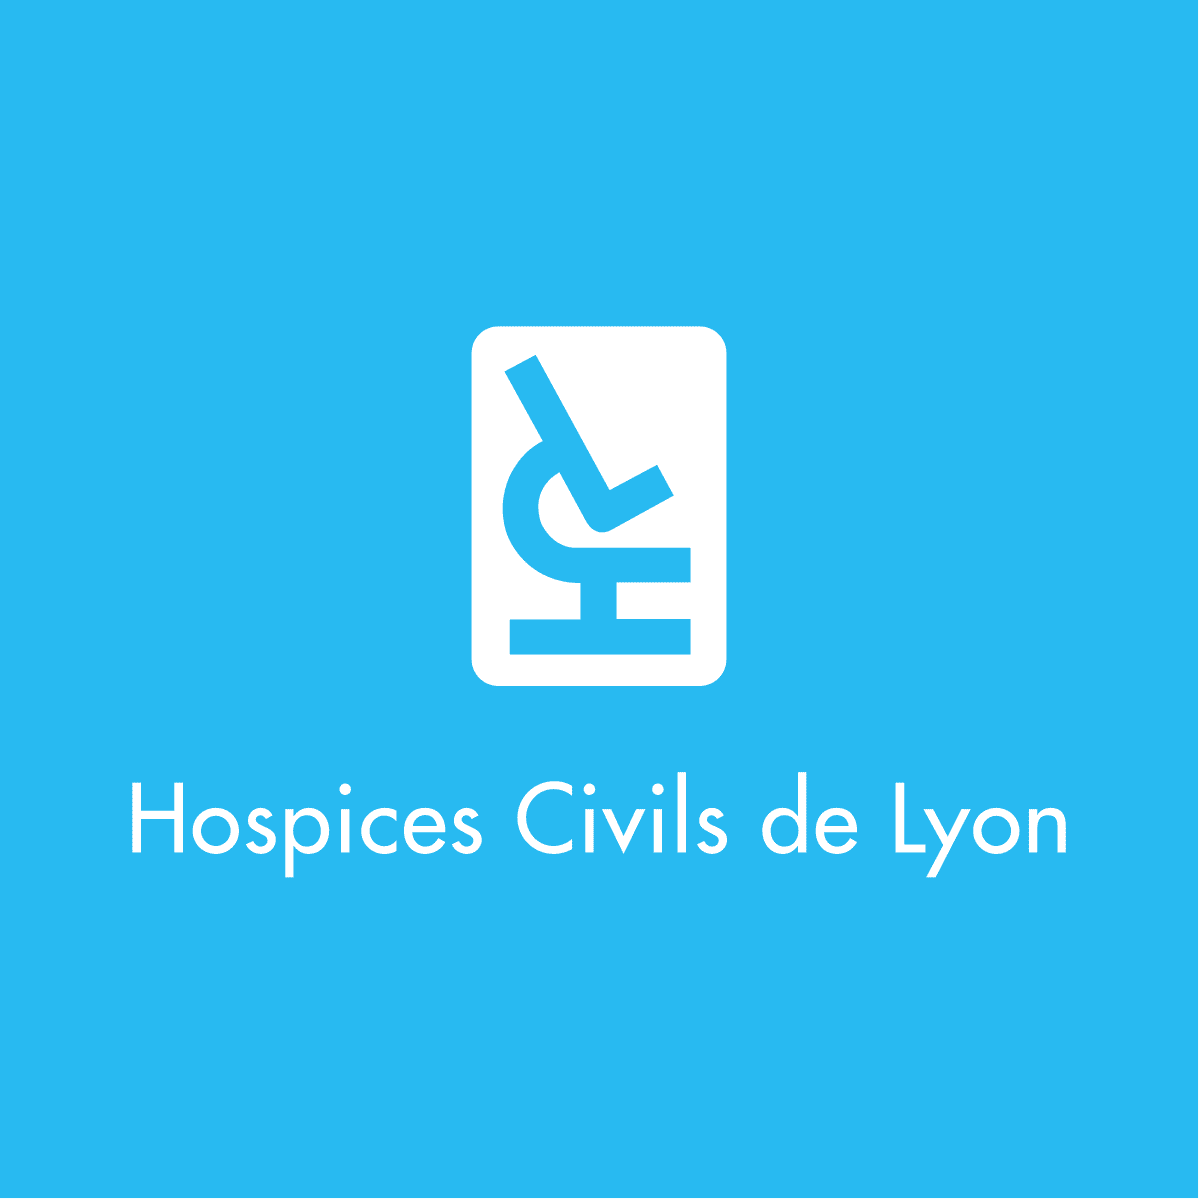 HCL_Hospices_Civils_de_Lyon_logo-cler-ingenierie